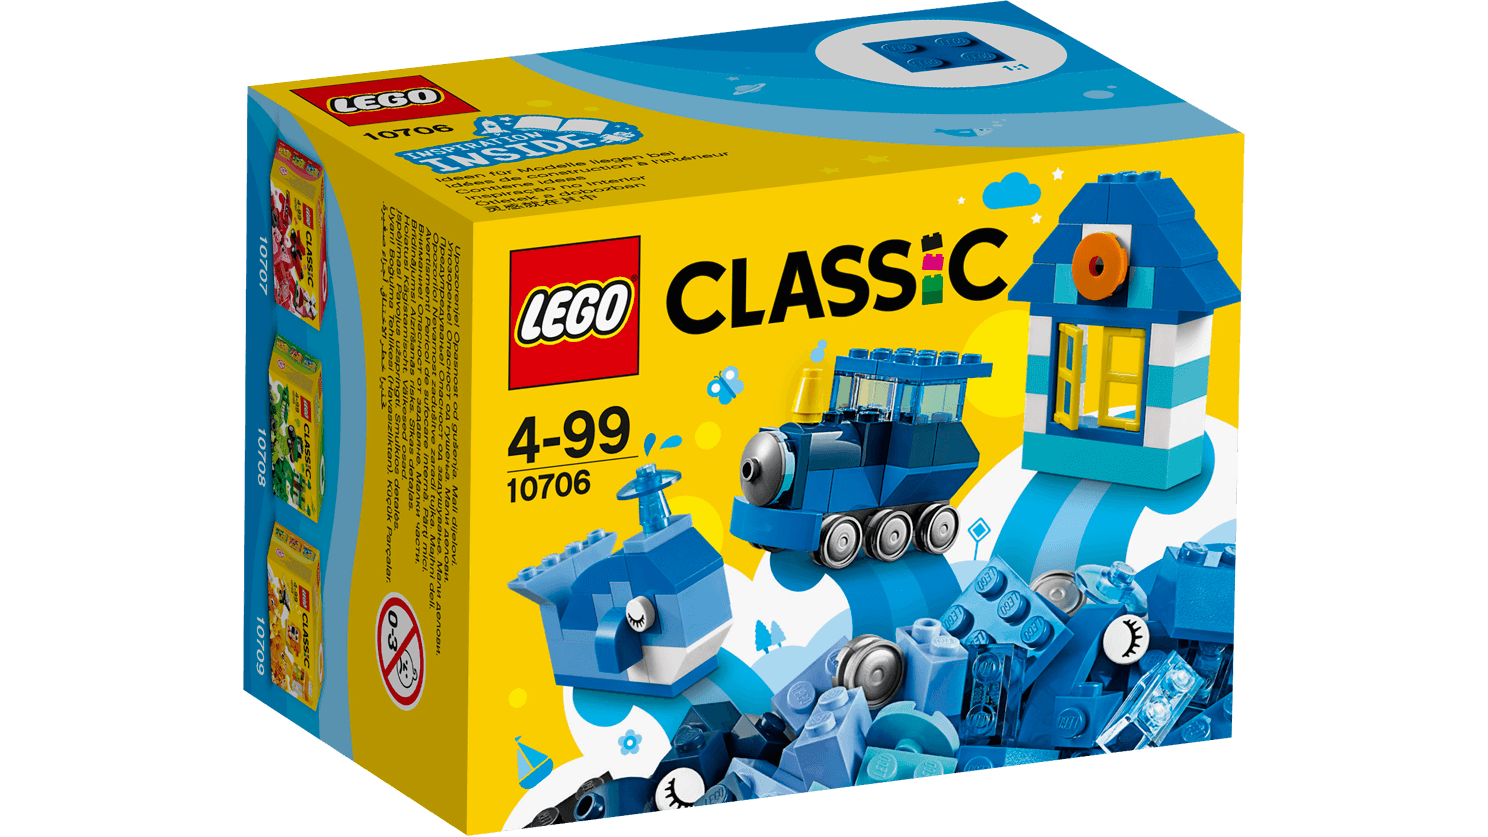 Lego Classic. Синий набор для творчества  